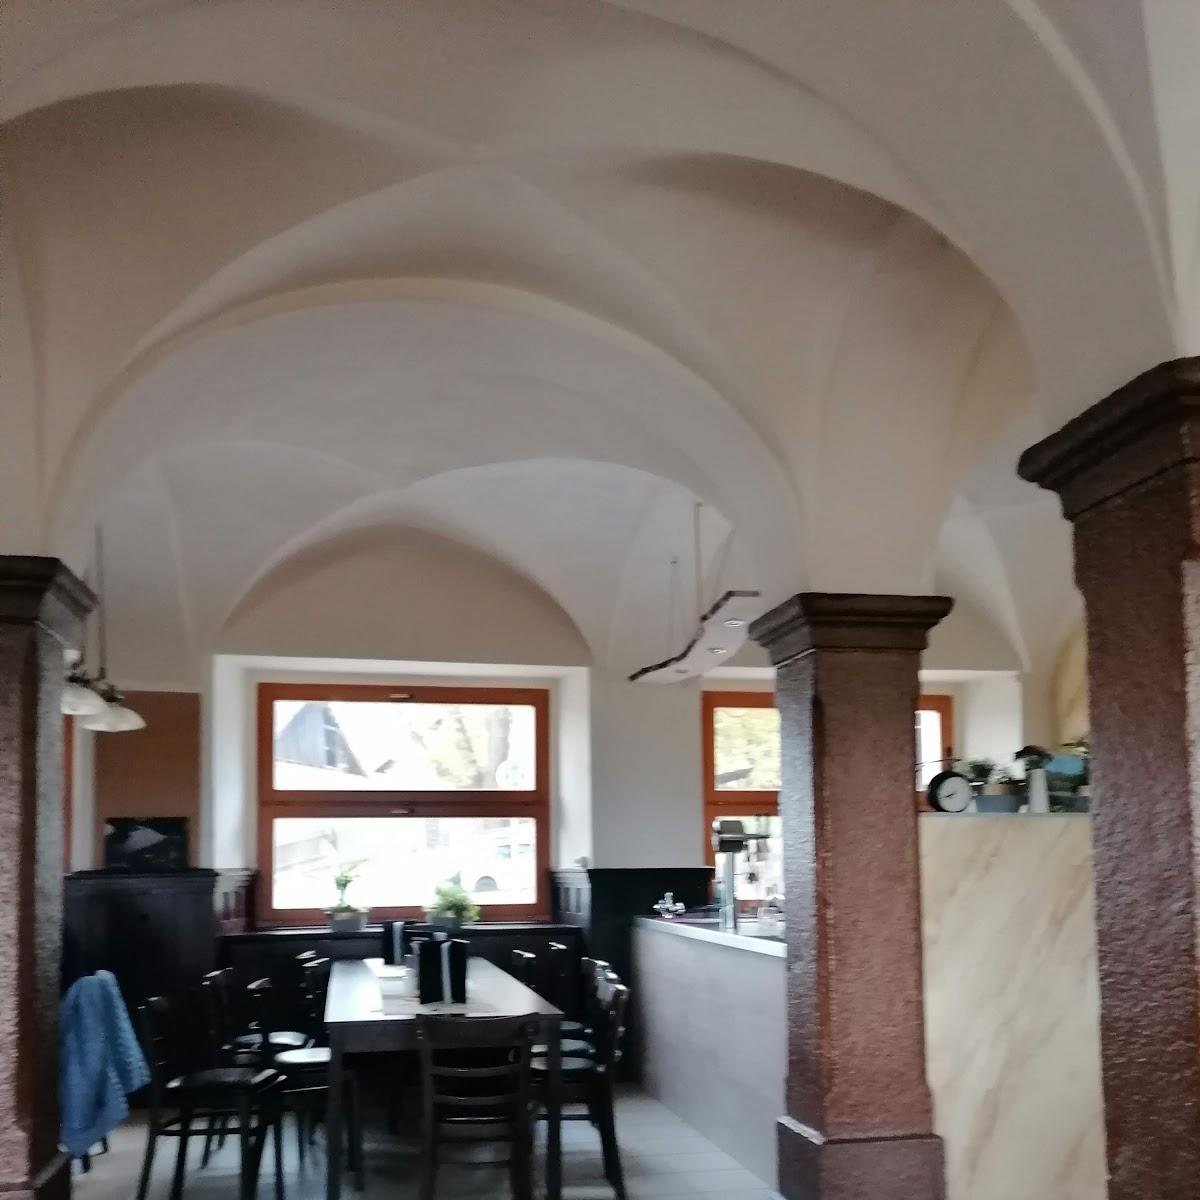 Restaurant "Schlossterrasse" in Burgk